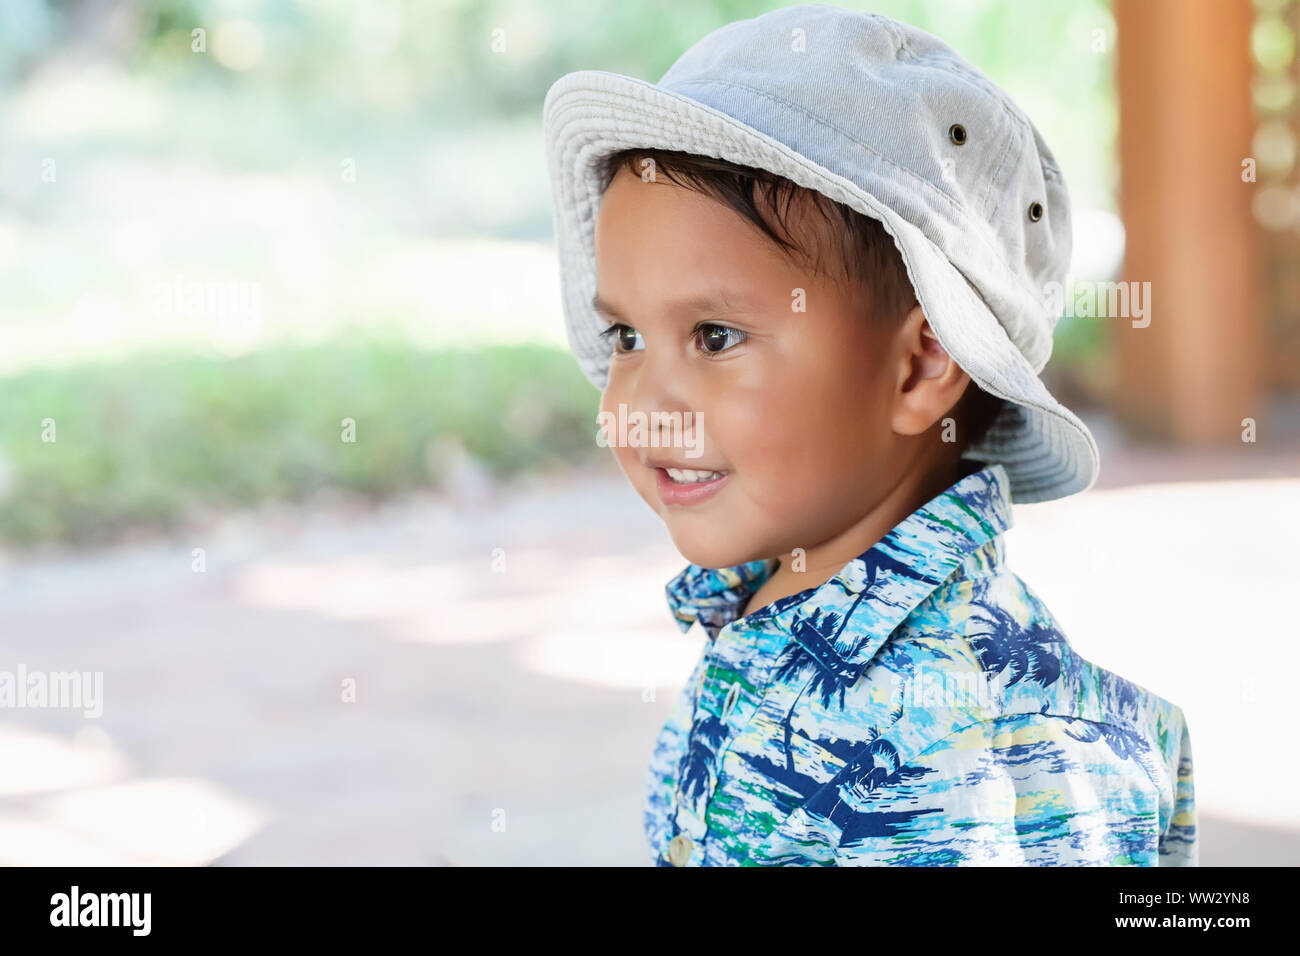 Un chiquillo; 3 año de edad, vistiendo un sombrero y una camiseta de impresión mirando en la distancia con una linda sonrisa en la cara Fotografía de stock - Alamy